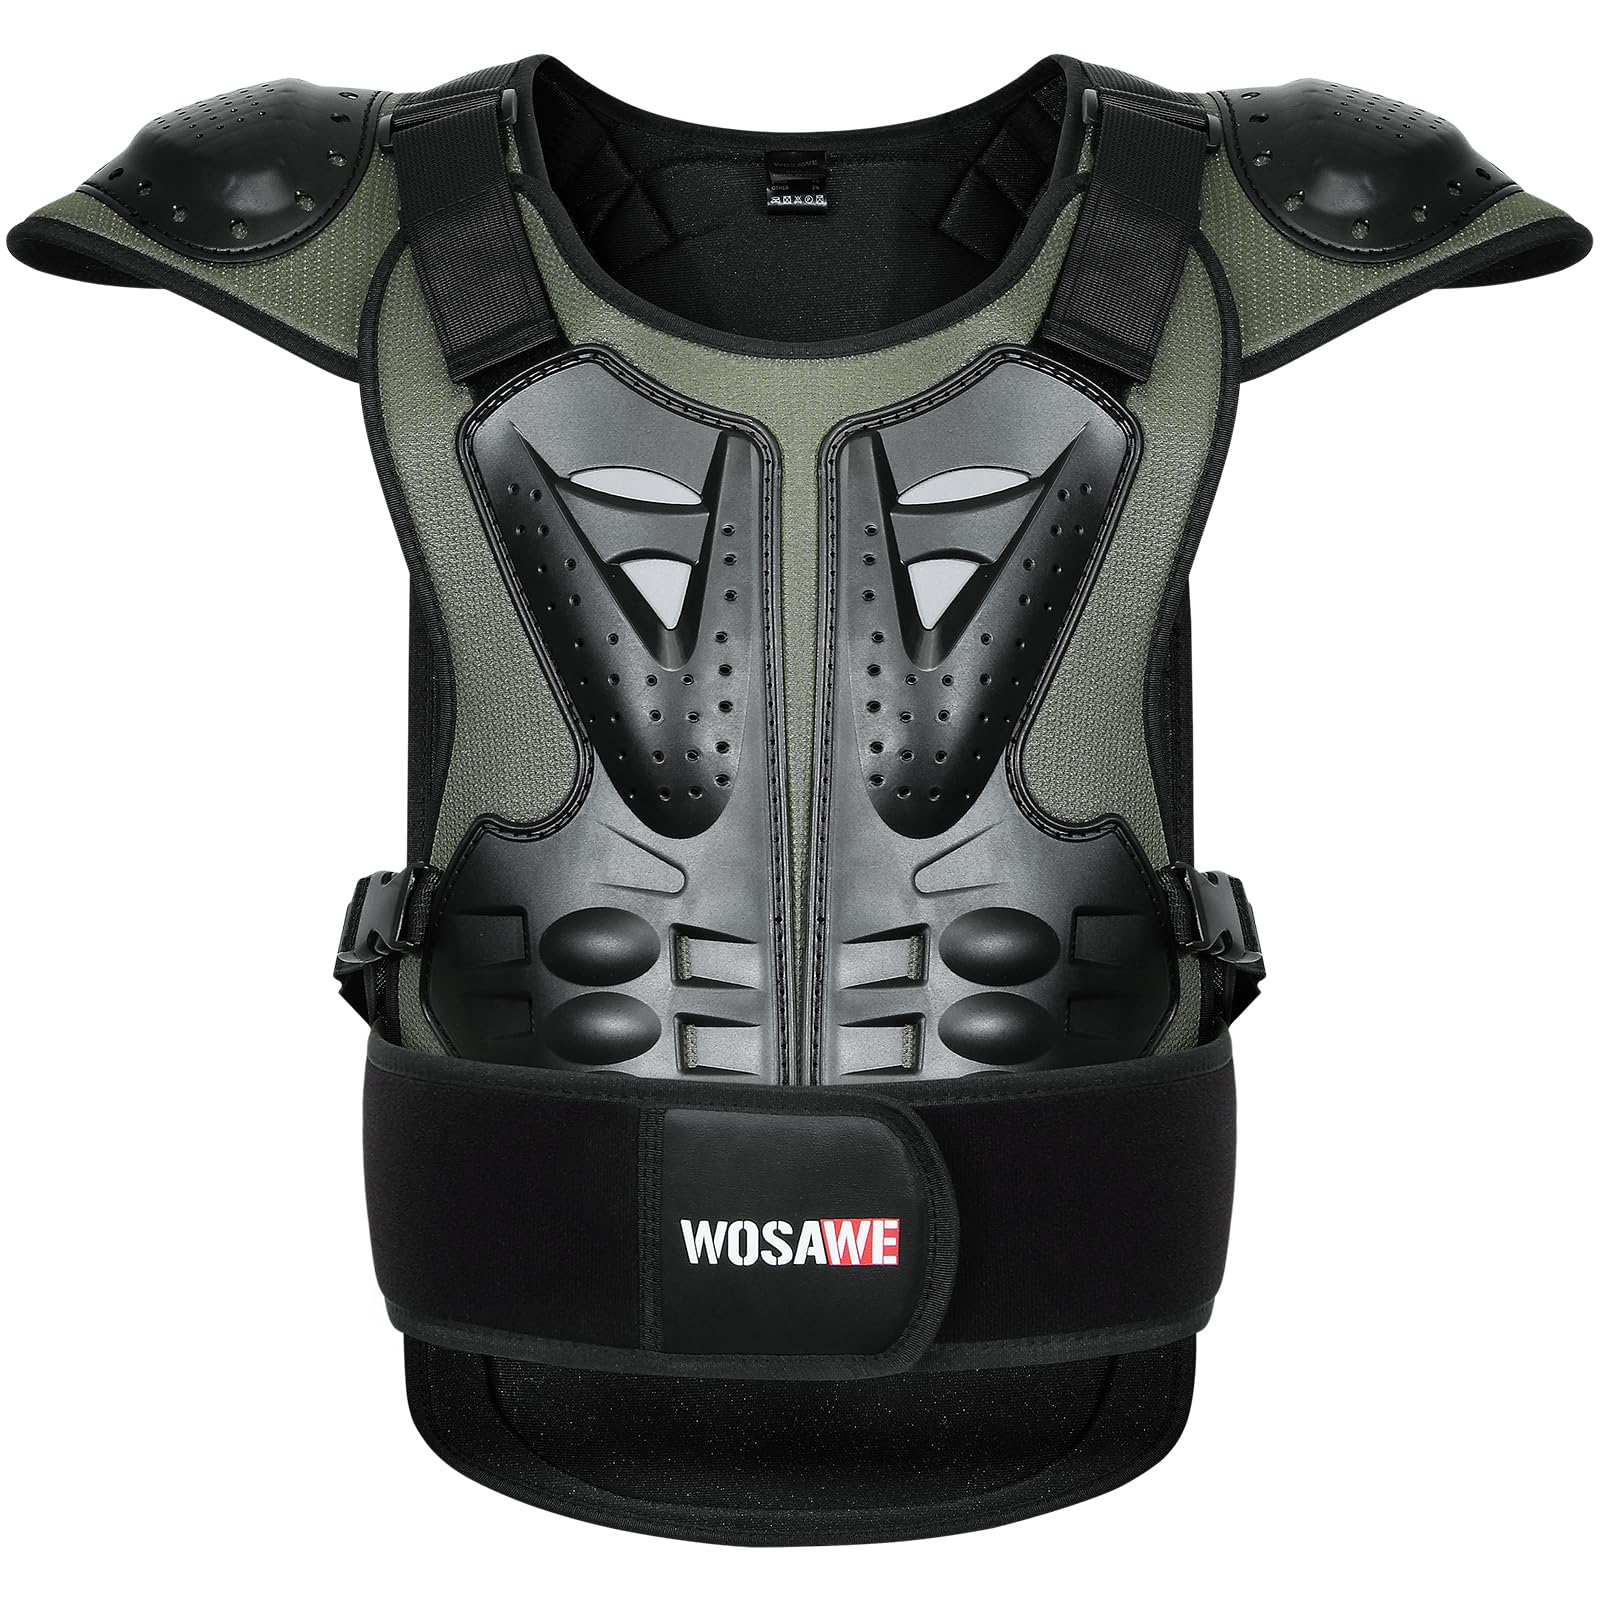 WOSAWE Motorrad Schutz Jacke für Erwachsene, Brustpanzer Racing Guard Rückenprotektoren Schutzausrüstung für Riding Skating Roller Skifahren Snowboard (15 Grün, M) von WOSAWE